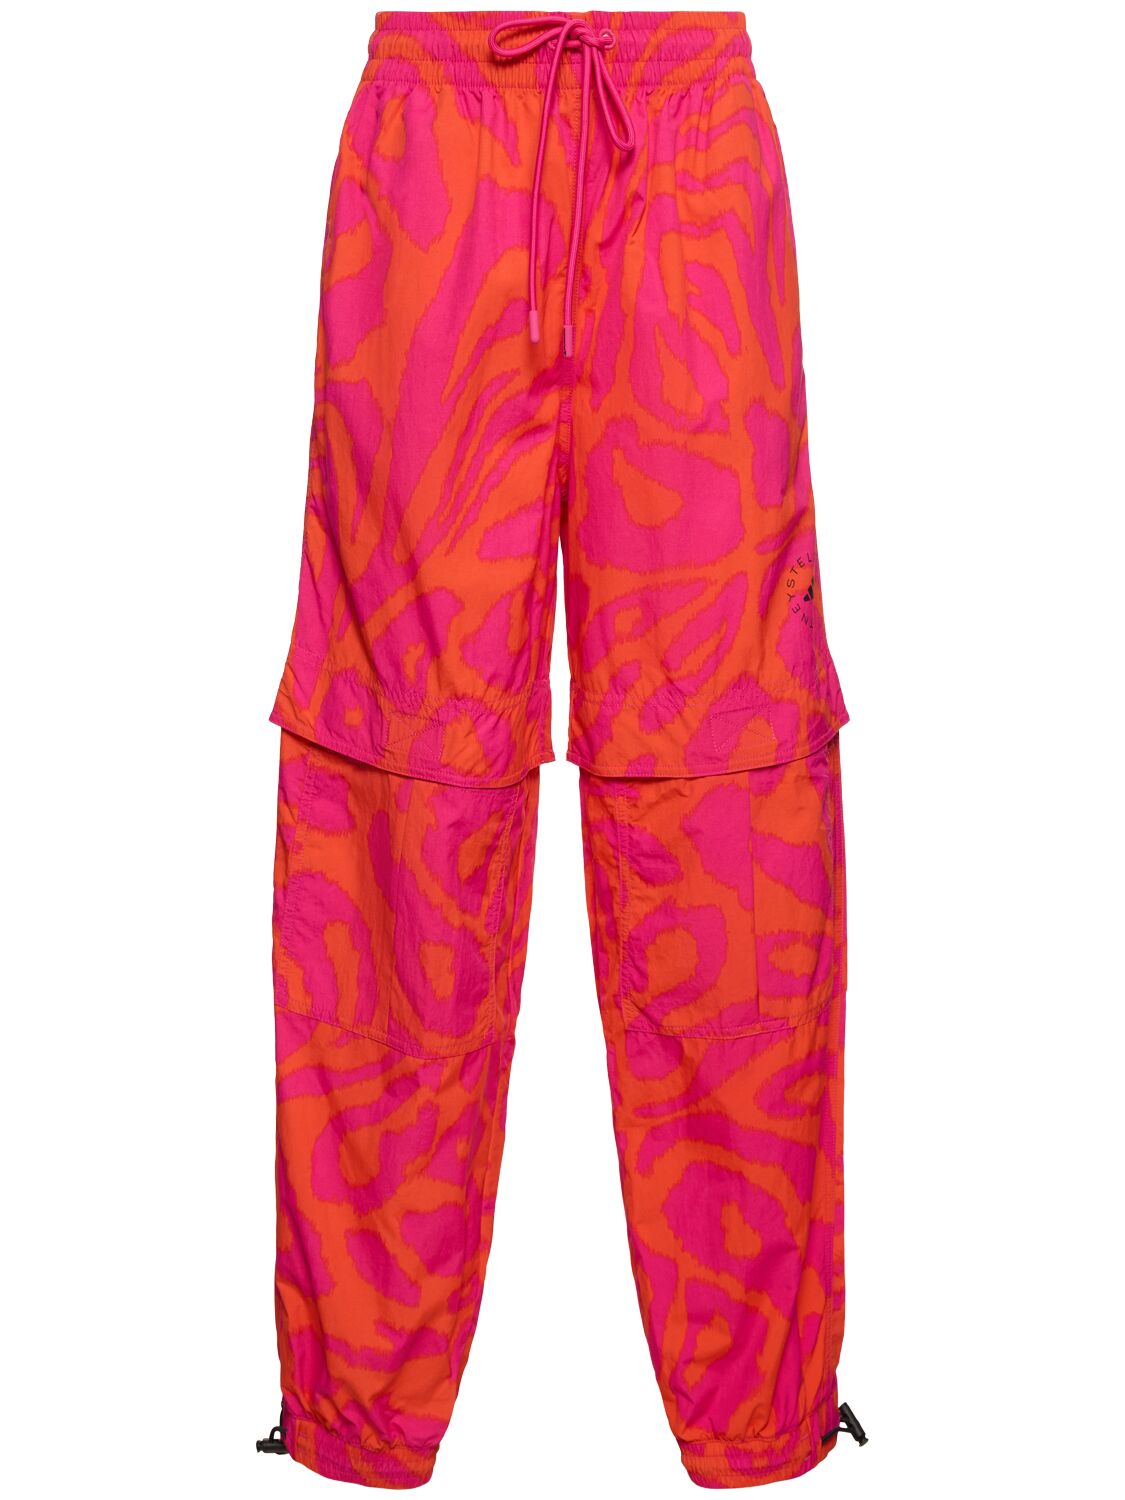 Adidas By Stella Mccartney 印花裤子 In Fuchsia,orange